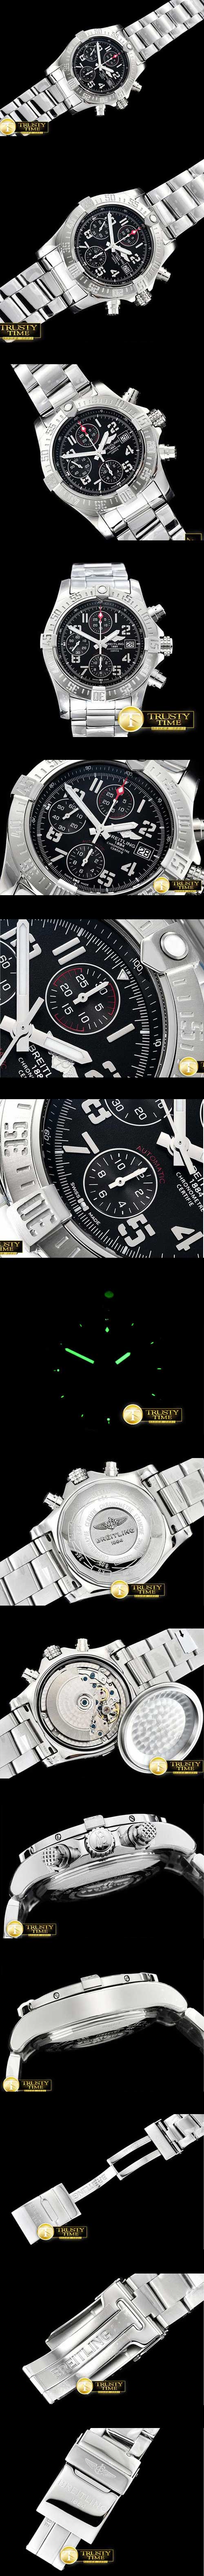 高級腕時計ブライトリング アベンジャー(クロノグラフ)GF工場